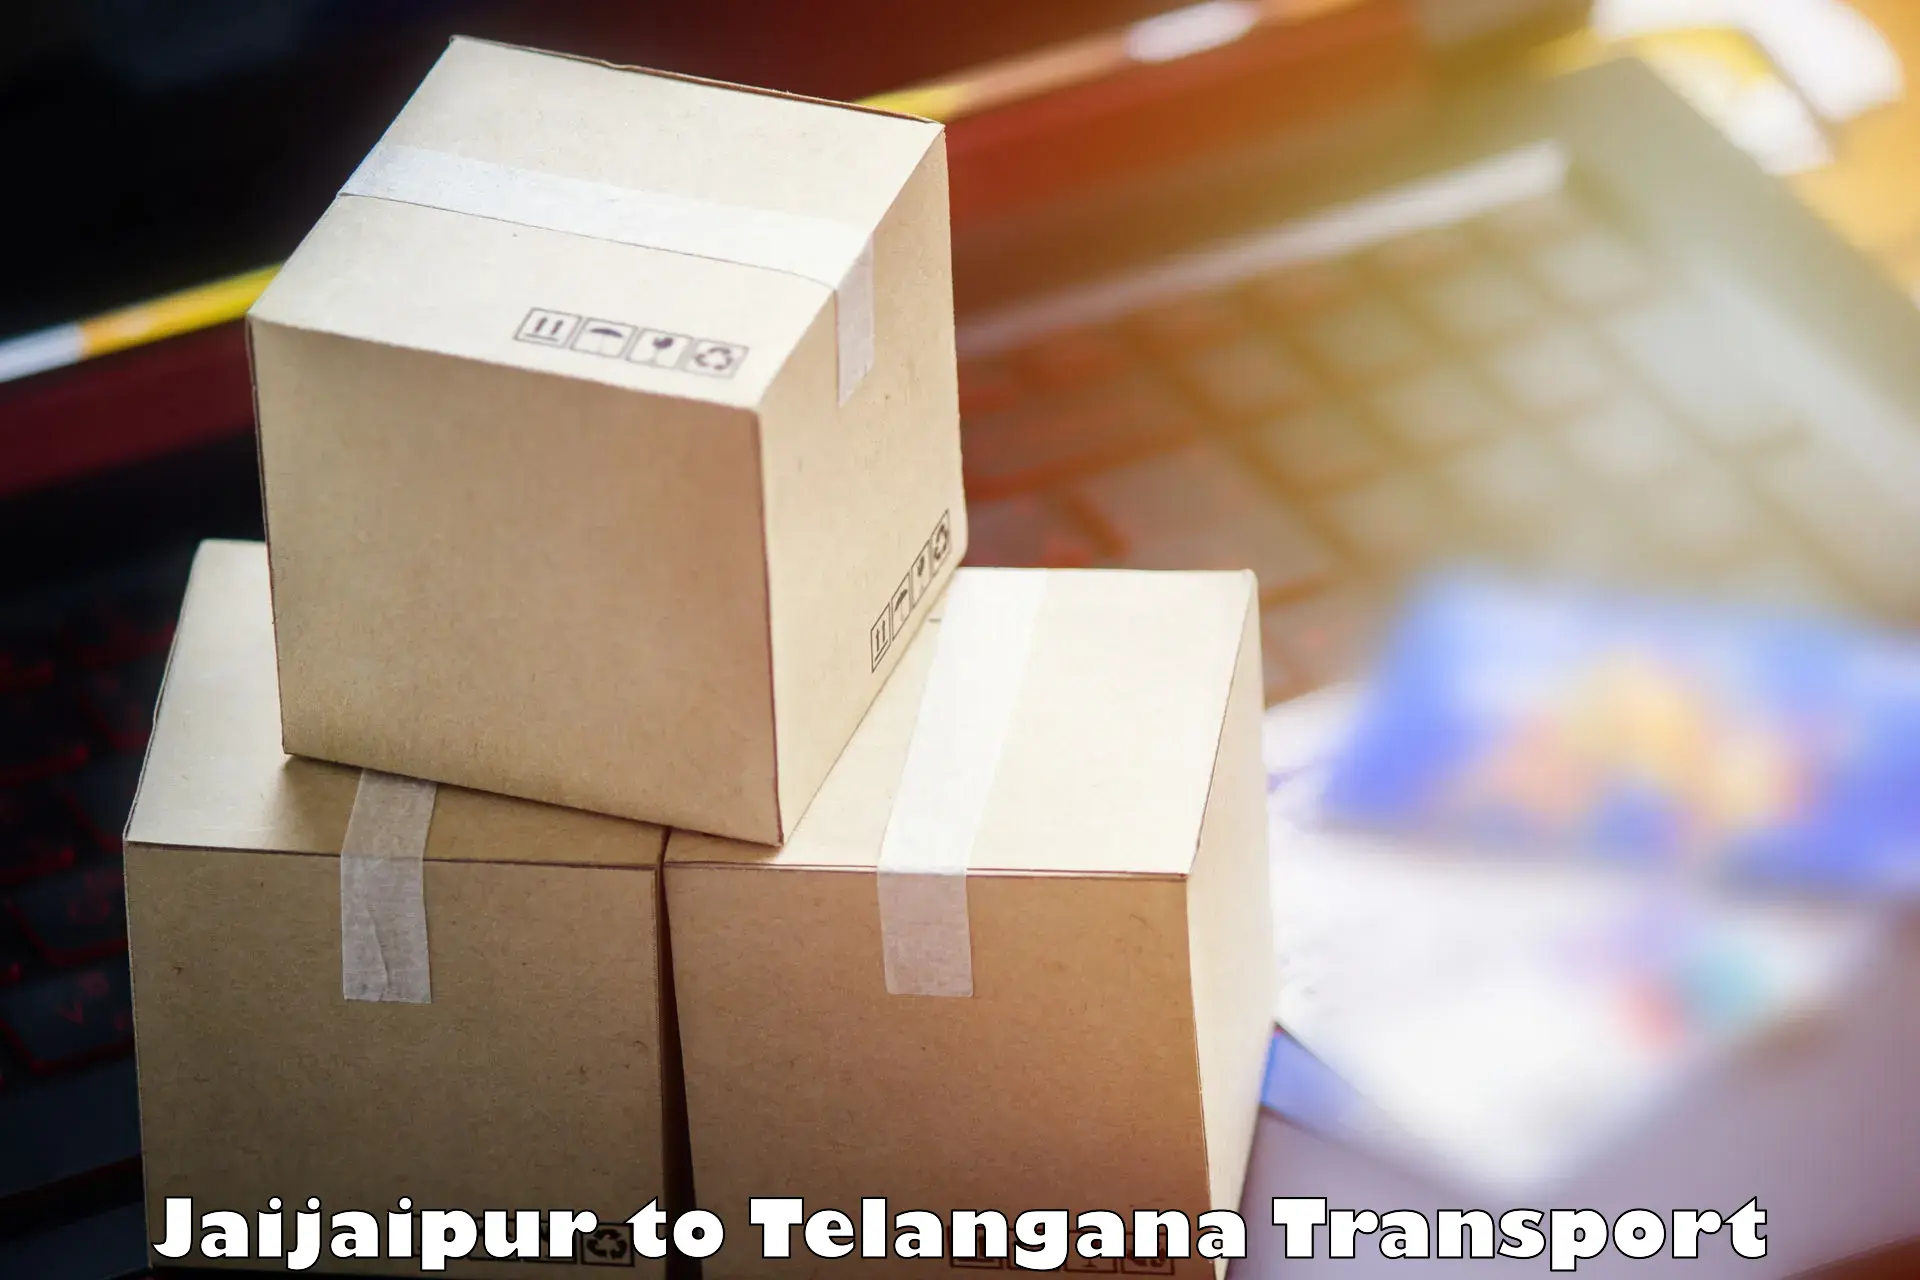 Container transport service Jaijaipur to Bejjanki